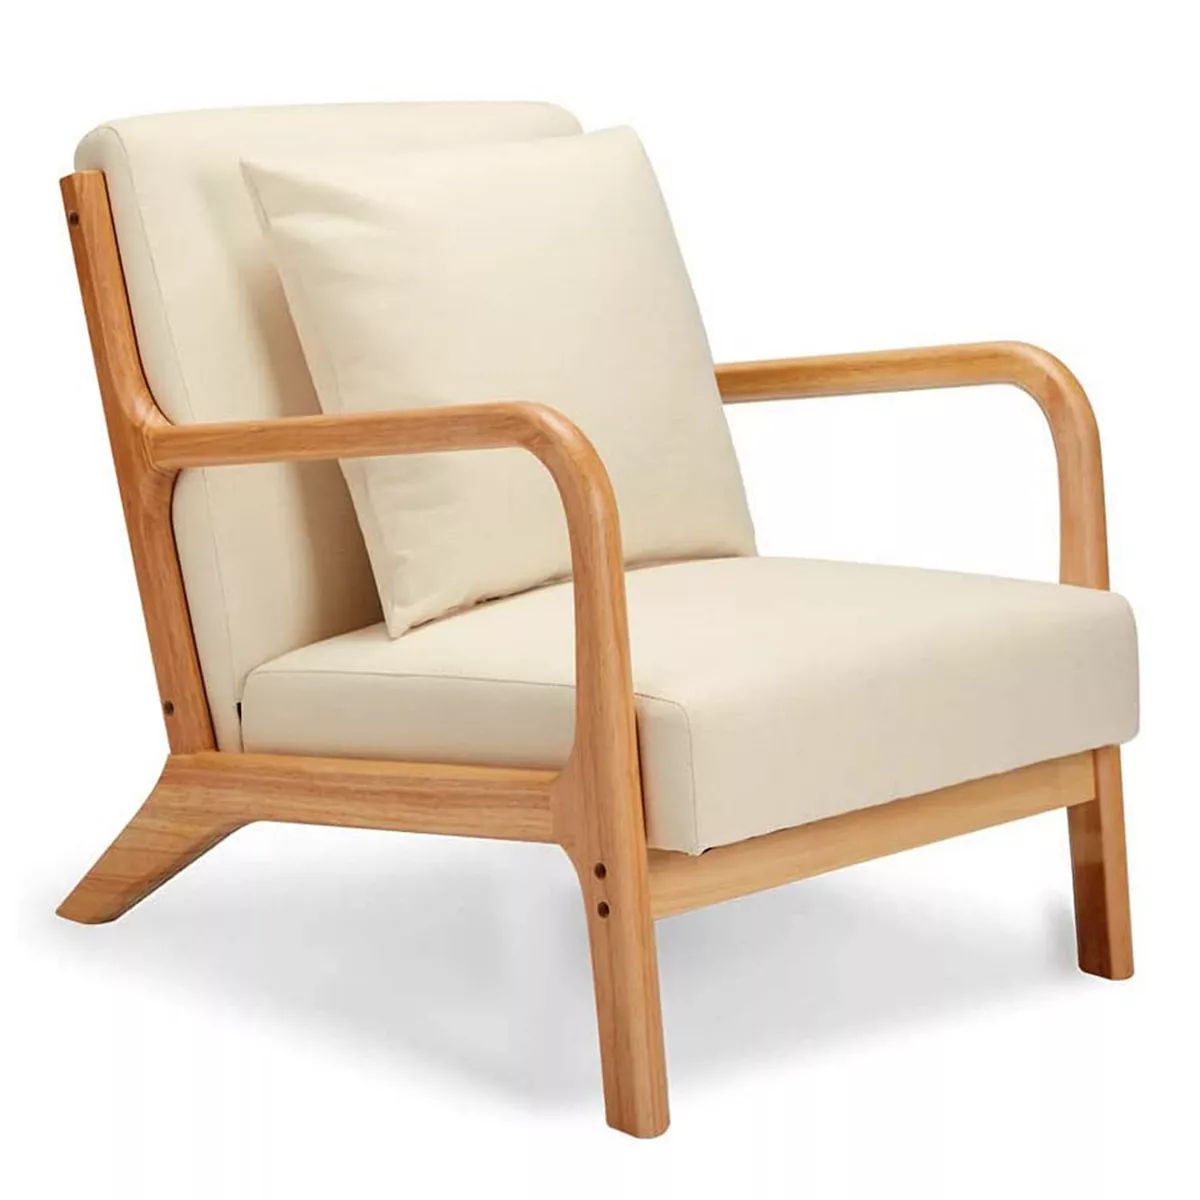 Jomeed Oak Wood Frame Mid Century Modern Accent Chair for Living Room, Beige | Kohl's